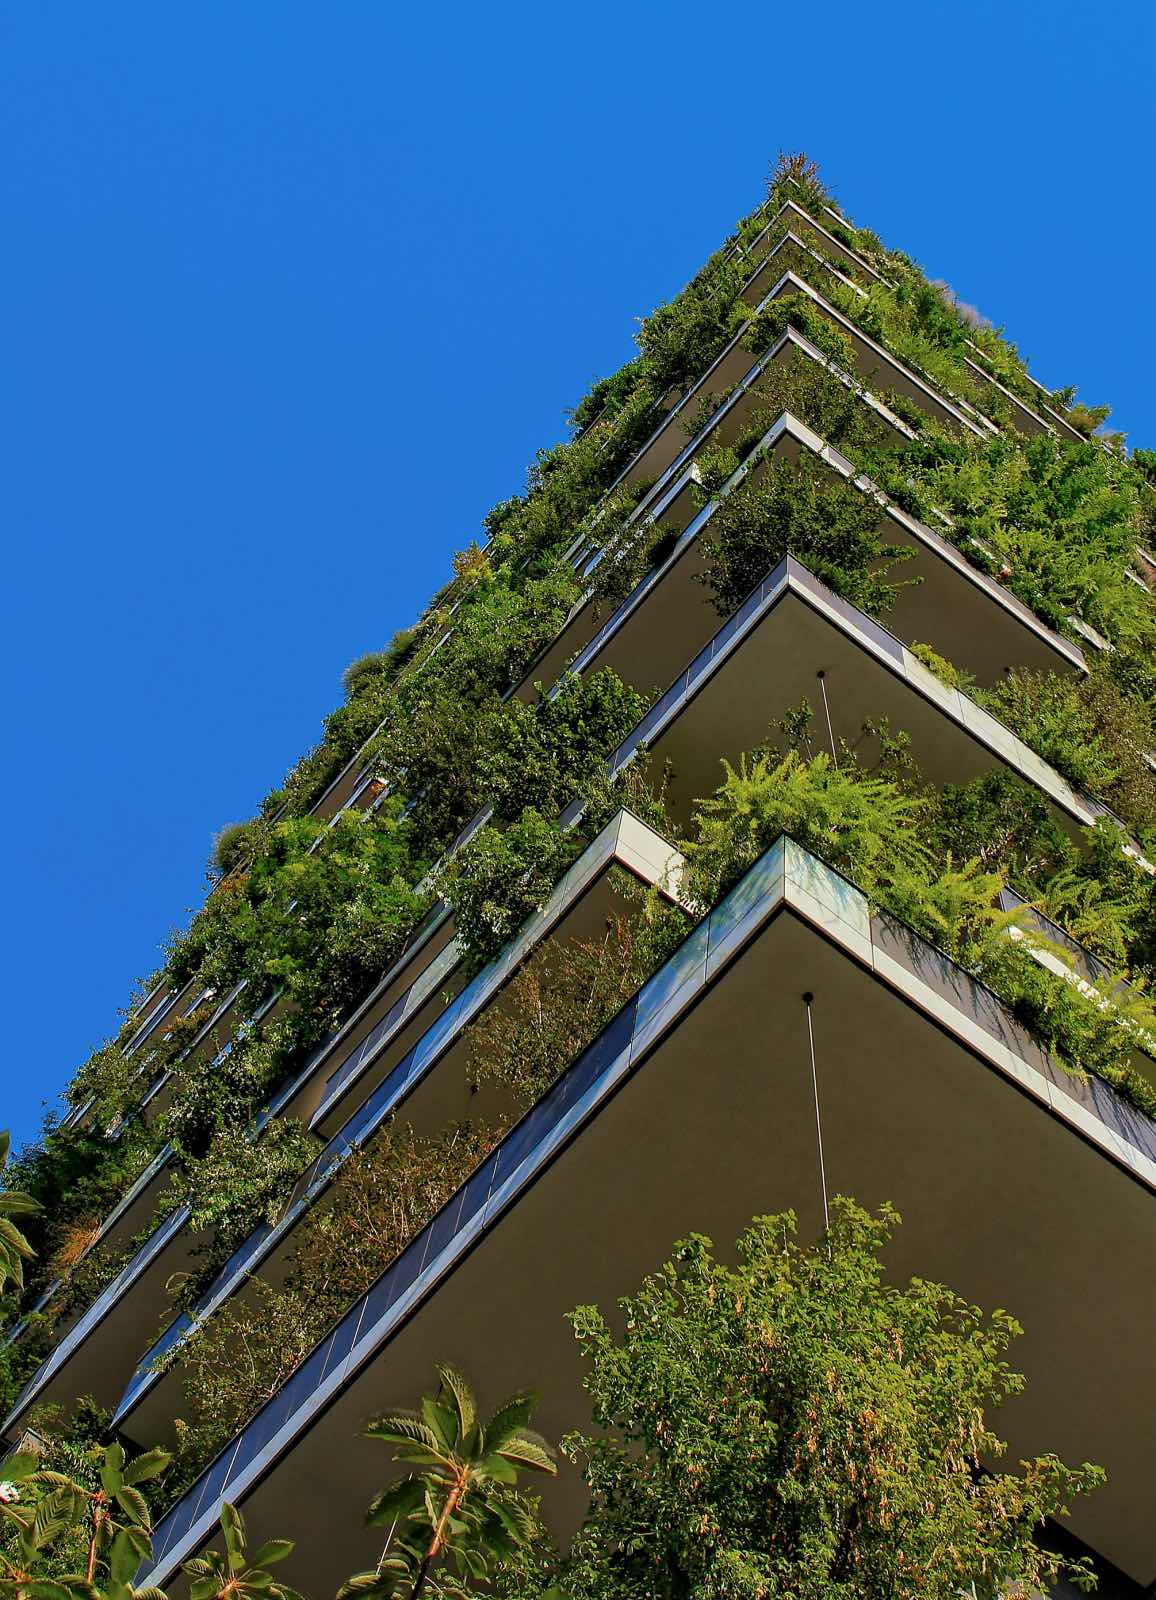 jardín vertical en edificio de la ciudad, jardín urbano